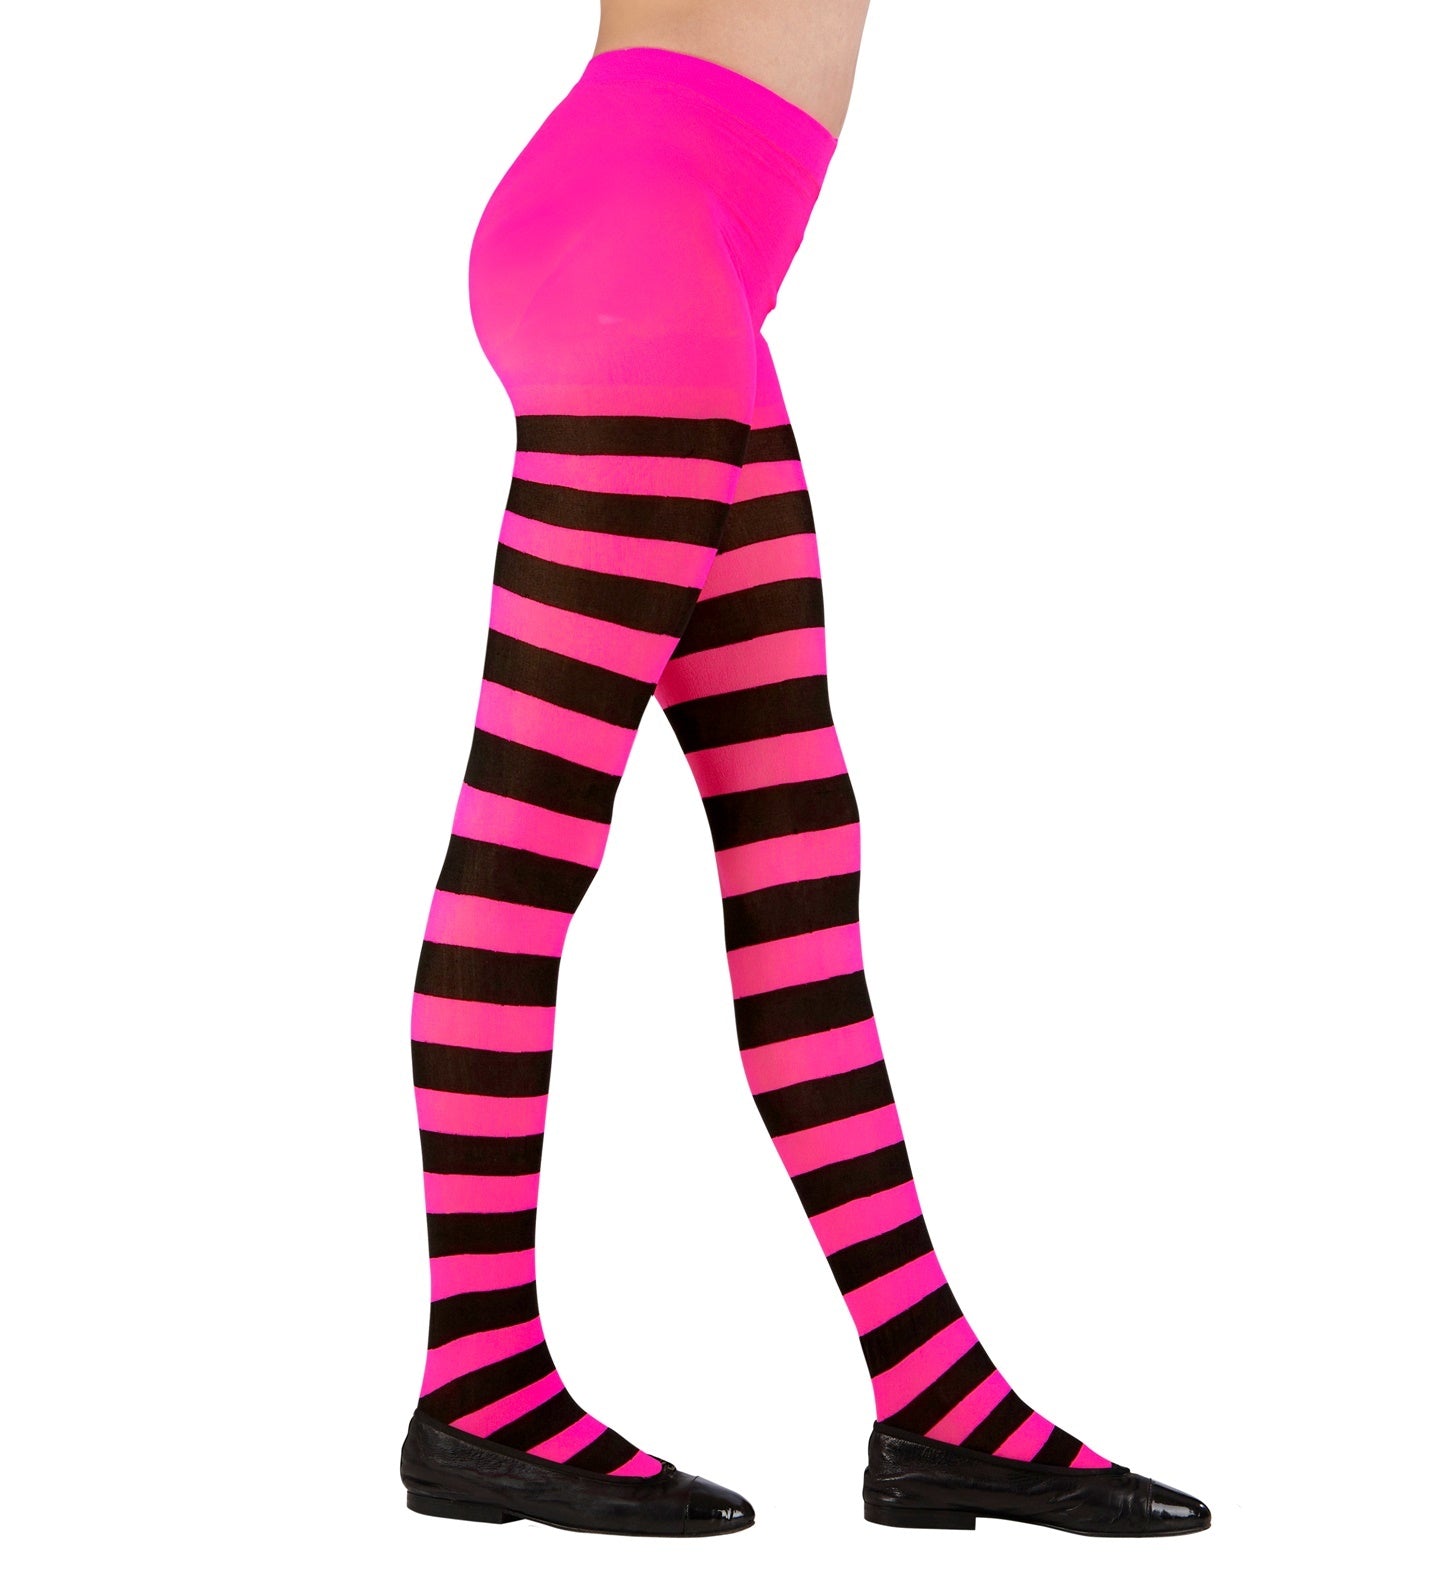 WIDMANN - Roze en zwart gestreepte panty voor kinderen - Zwart - 92/104 (1-3 jaar)